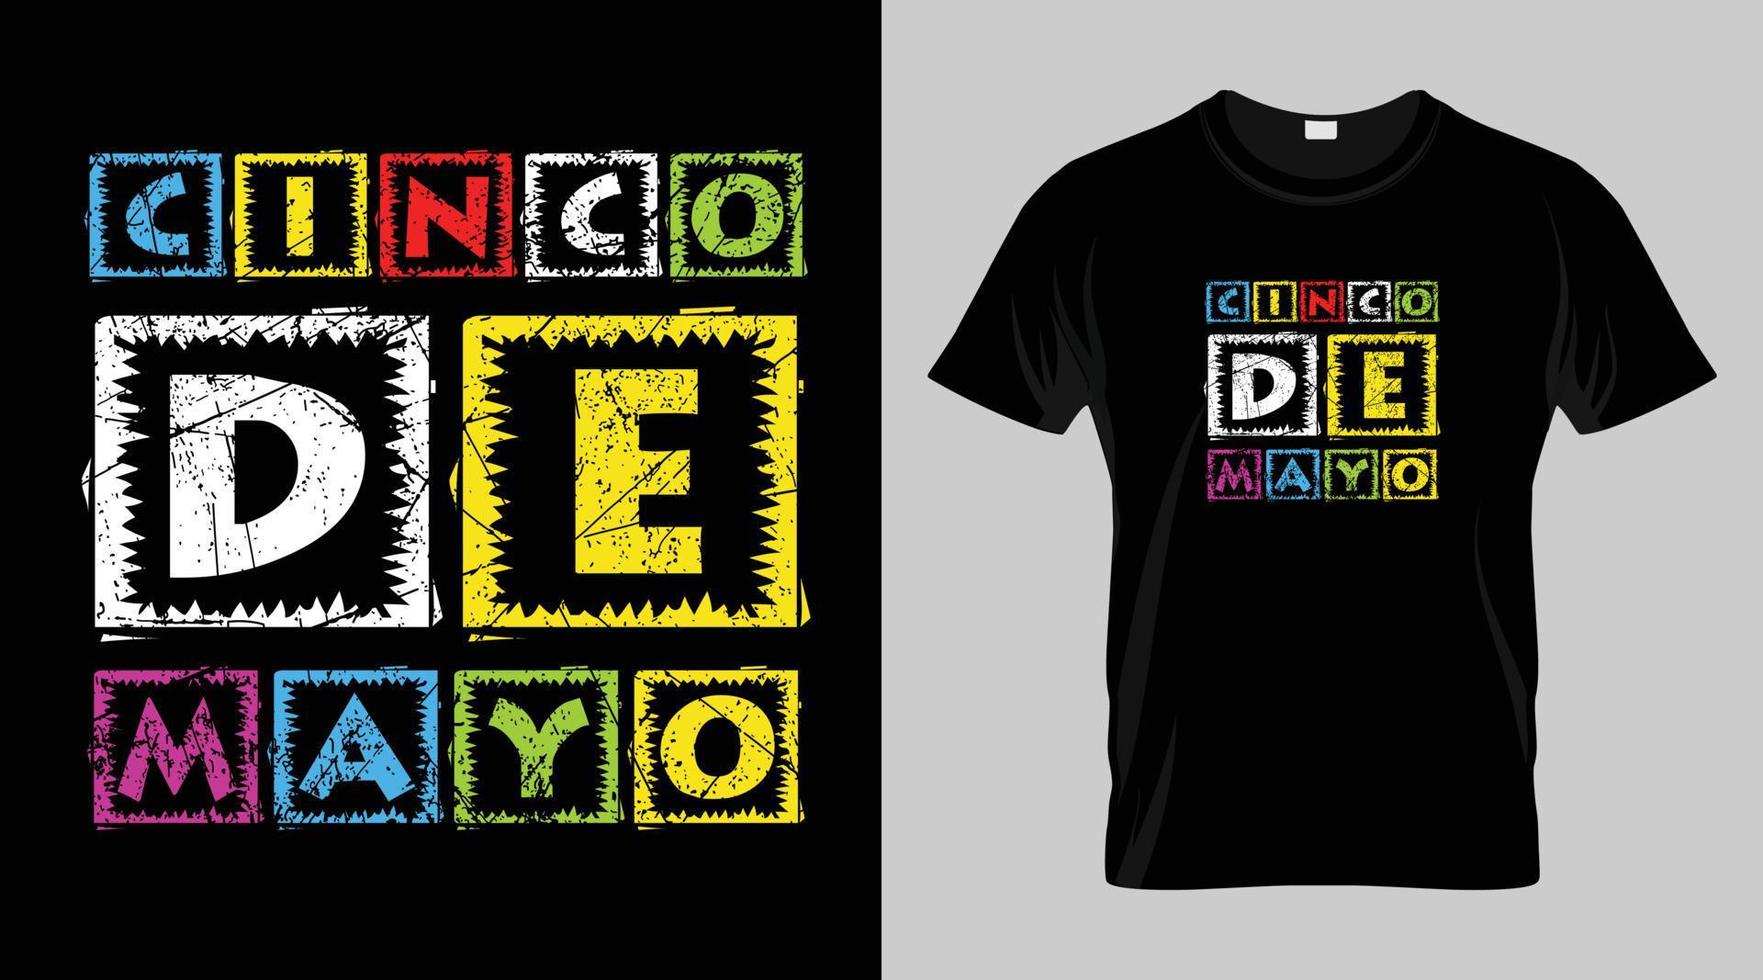 cinco Delaware mayonesa festival camiseta diseño, mexicano festival vector camiseta diseño